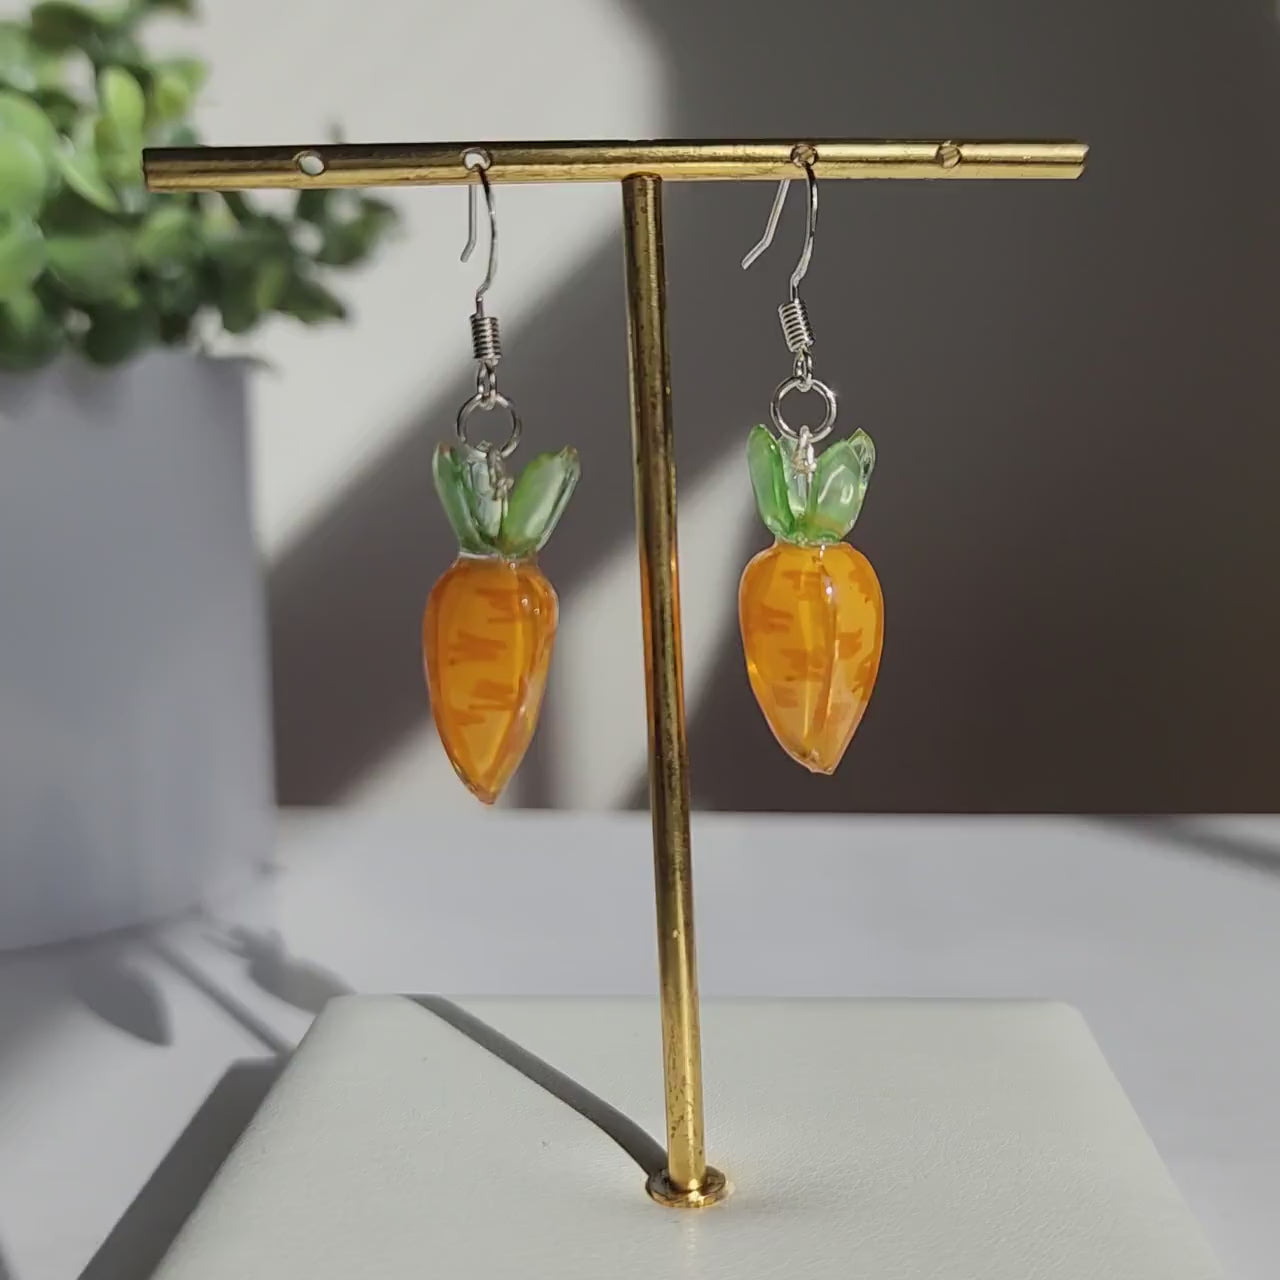 Carrot vegetable earrings, Food carrot earrings, Gift for her